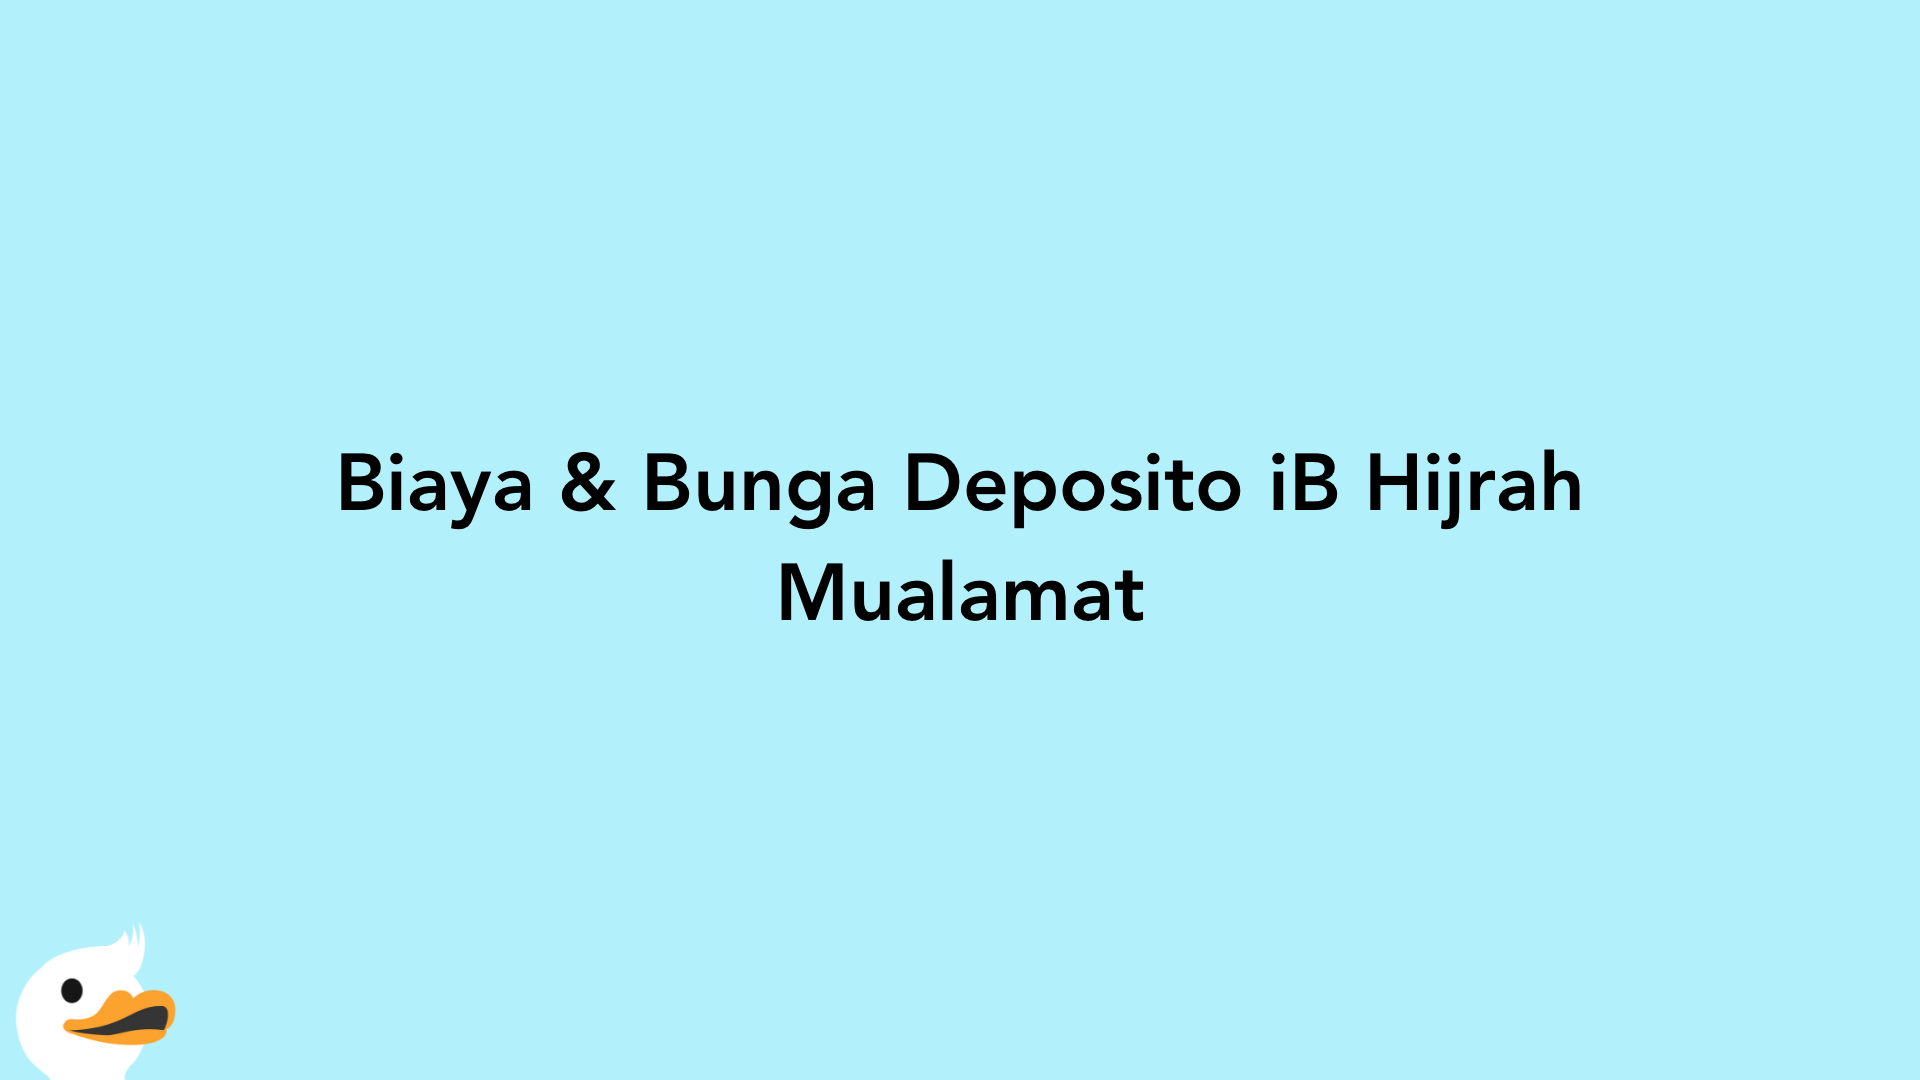 Biaya & Bunga Deposito iB Hijrah Mualamat